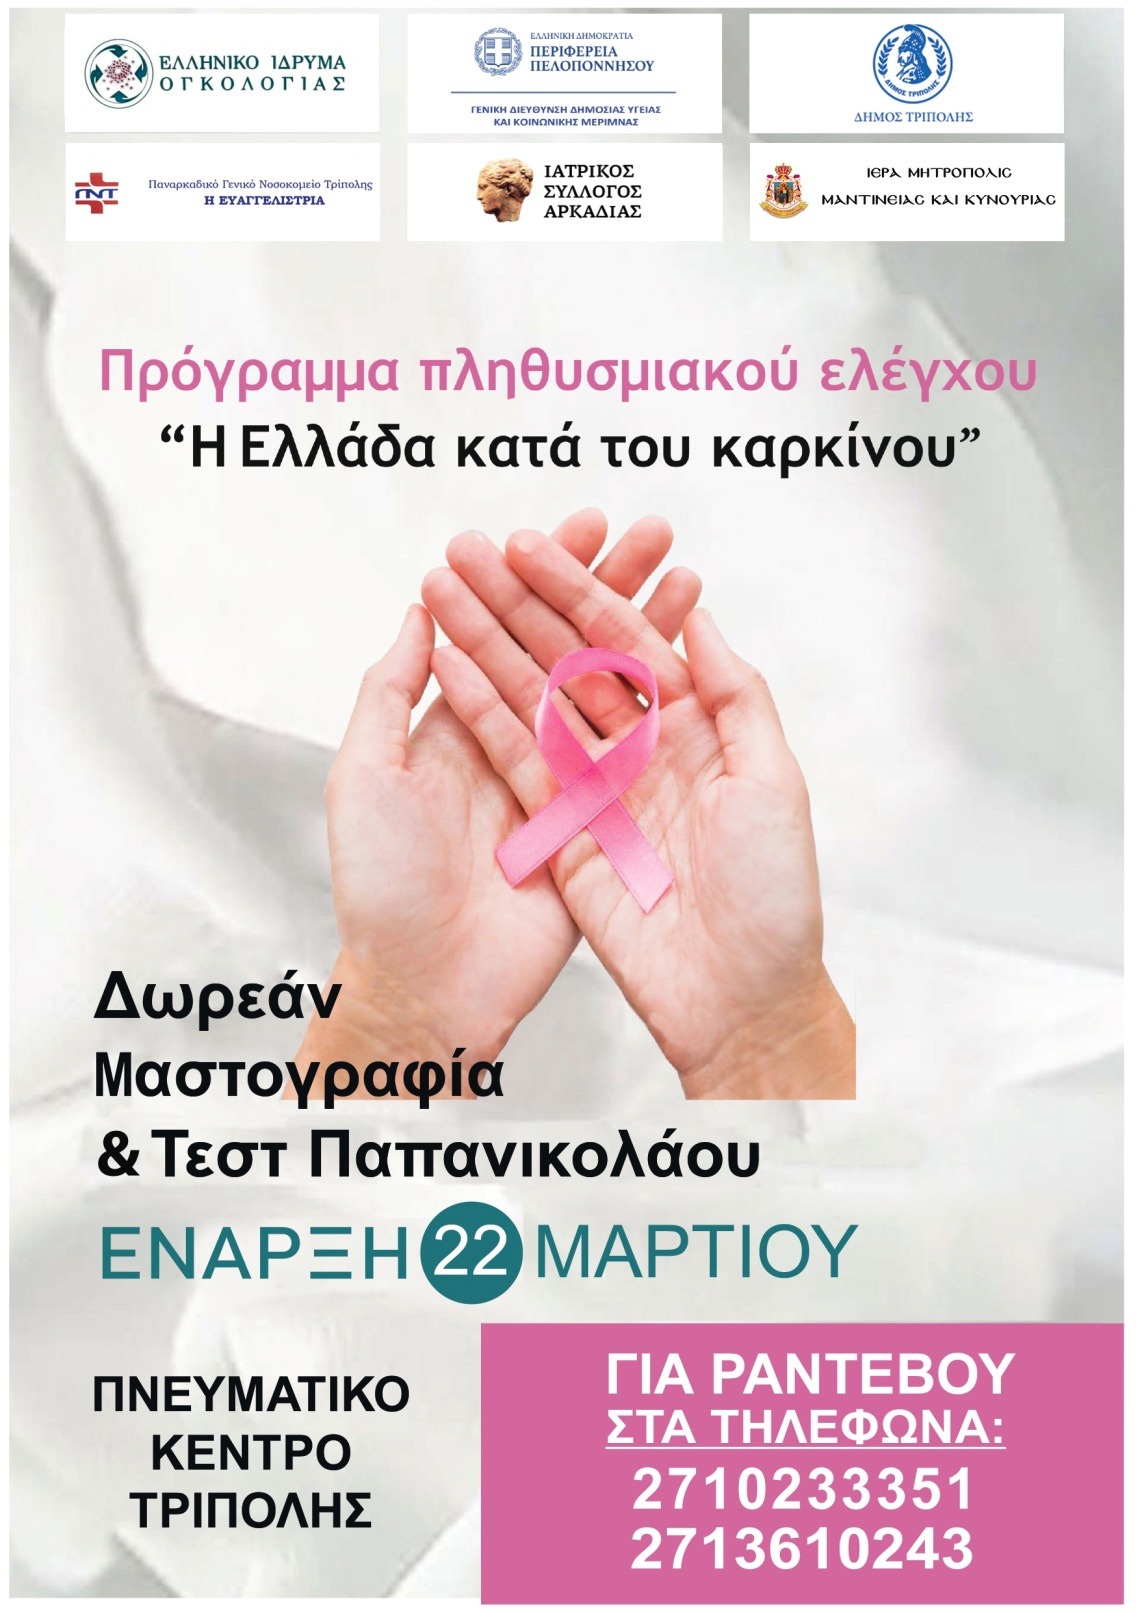 Πρόγραμμα "Η Ελλάδα κατά του καρκίνου" στον Δήμο Τρίπολης